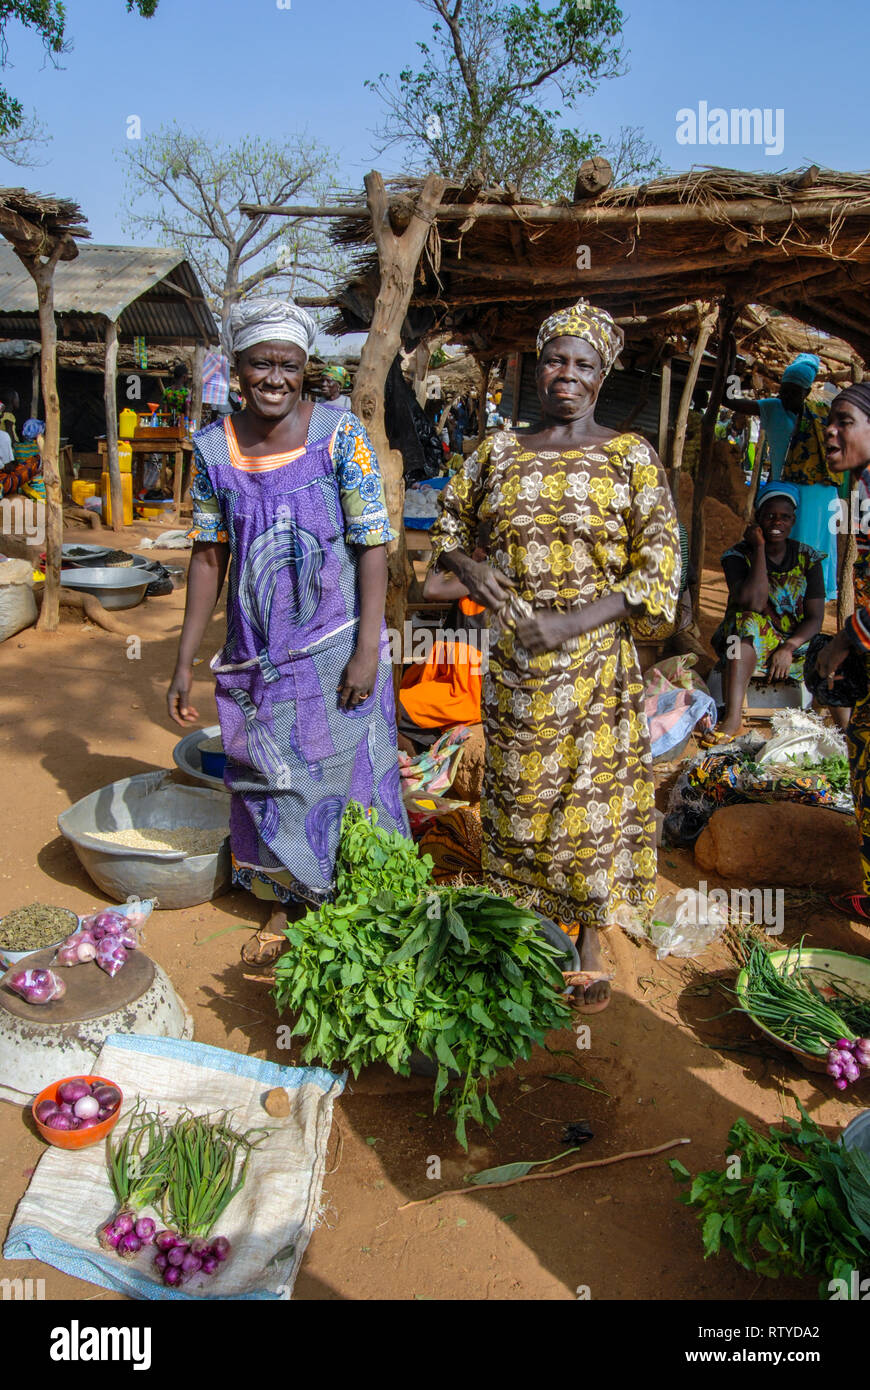 Une belle photo de deux belles femmes ghanéennes portant des vêtements traditionnels pour vendre des légumes et épices à l'échelle locale des produits frais du marché dans village Kongo. Banque D'Images